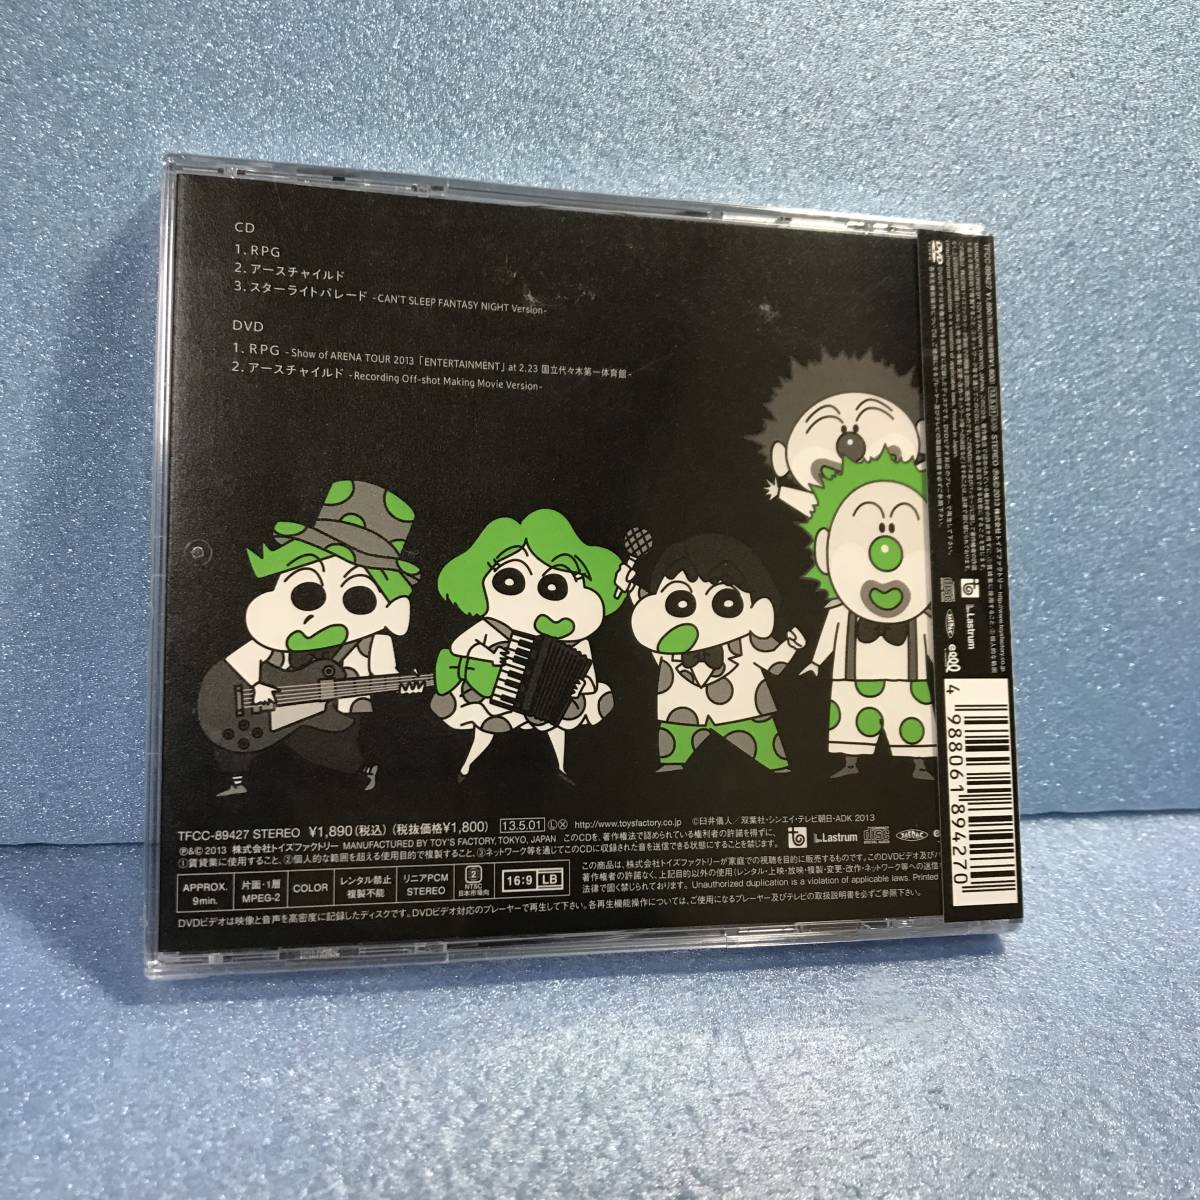 未開封 初回限定盤b cd dvd rpg sekai no owari セカイノオワリ 世界の終わり クレヨンしんちゃん バカうまっ b級グルメサバイバル